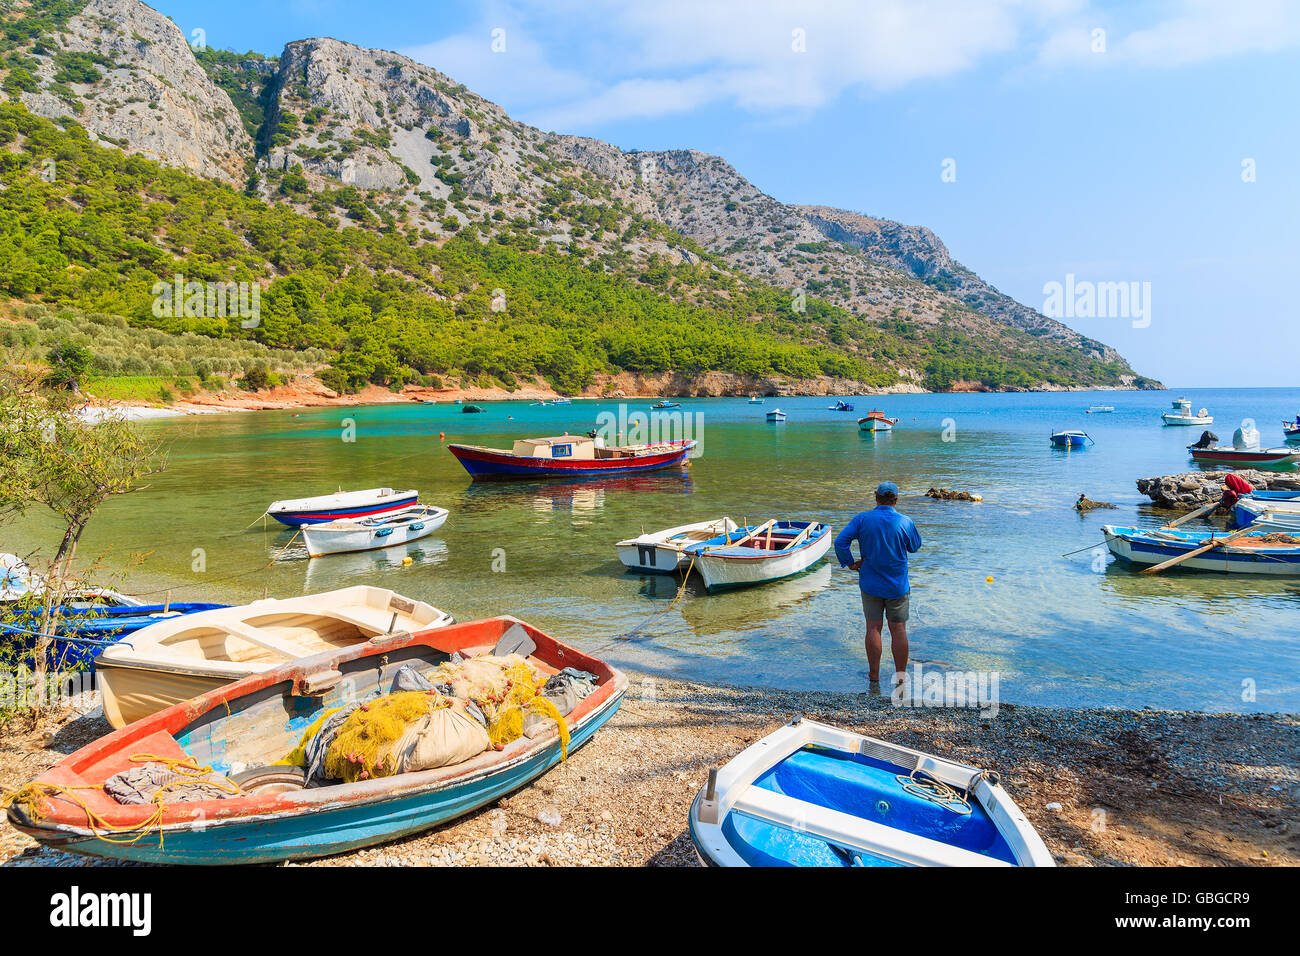 Parmi les bateaux de pêche pêcheur debout sur une plage isolée, l'île de Samos, Grèce Banque D'Images